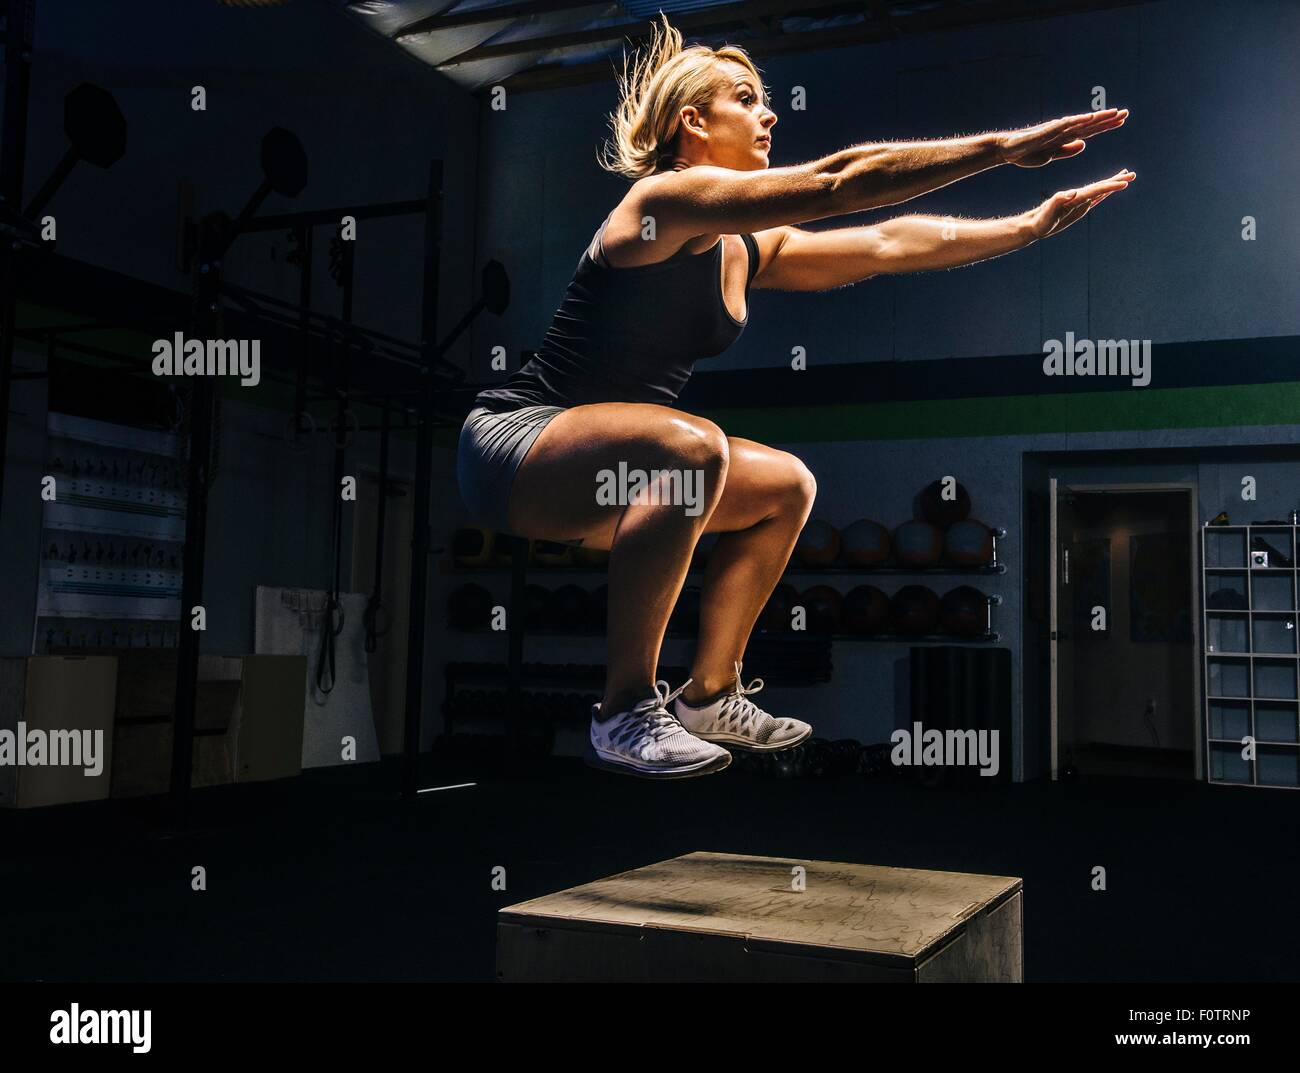 Junge Frau springen Luft auf Fitness-Studio-Box mit Arme ausstrecken Stockfoto